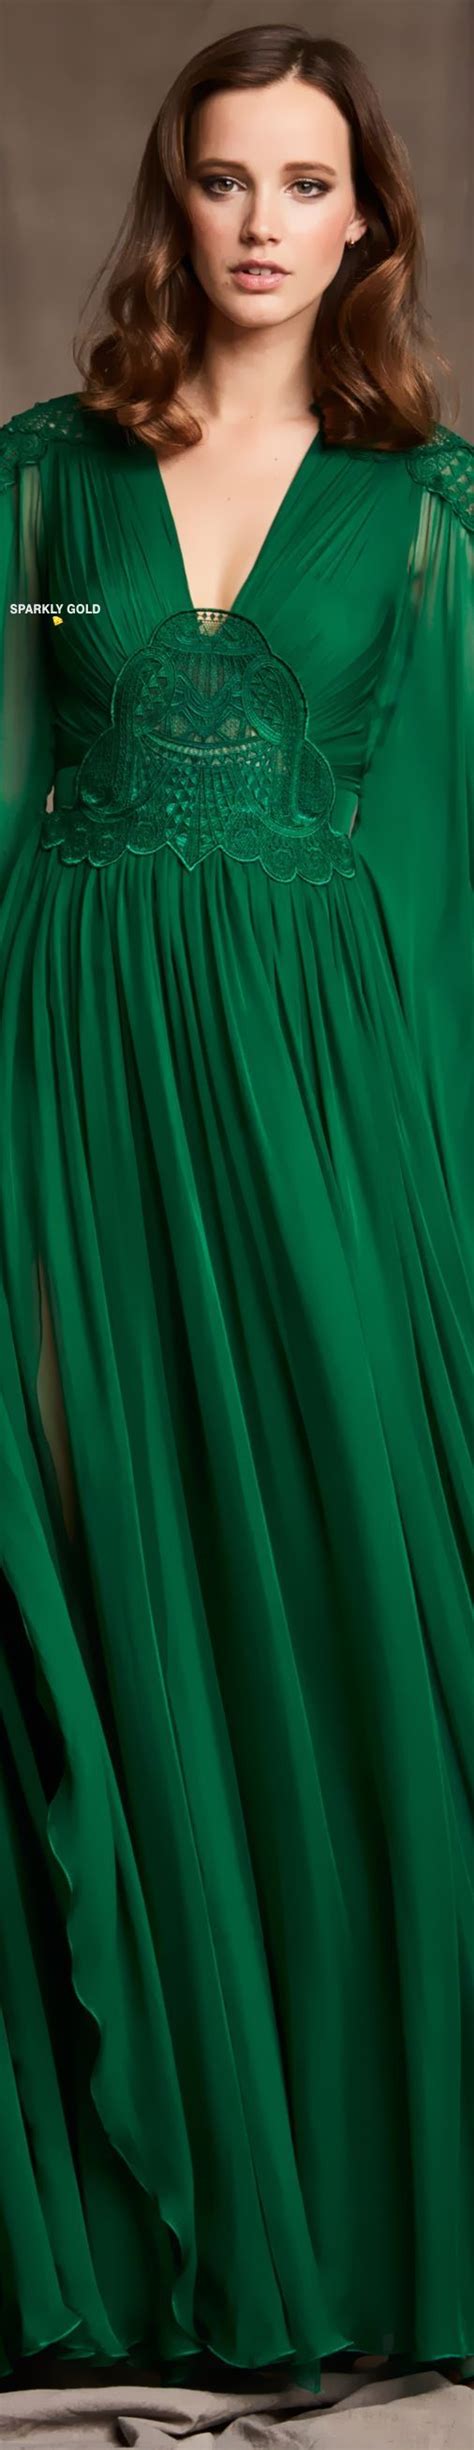 Zuhair Murad Pre Fall 2020 Beautiful Gowns Green Fashion Fashion